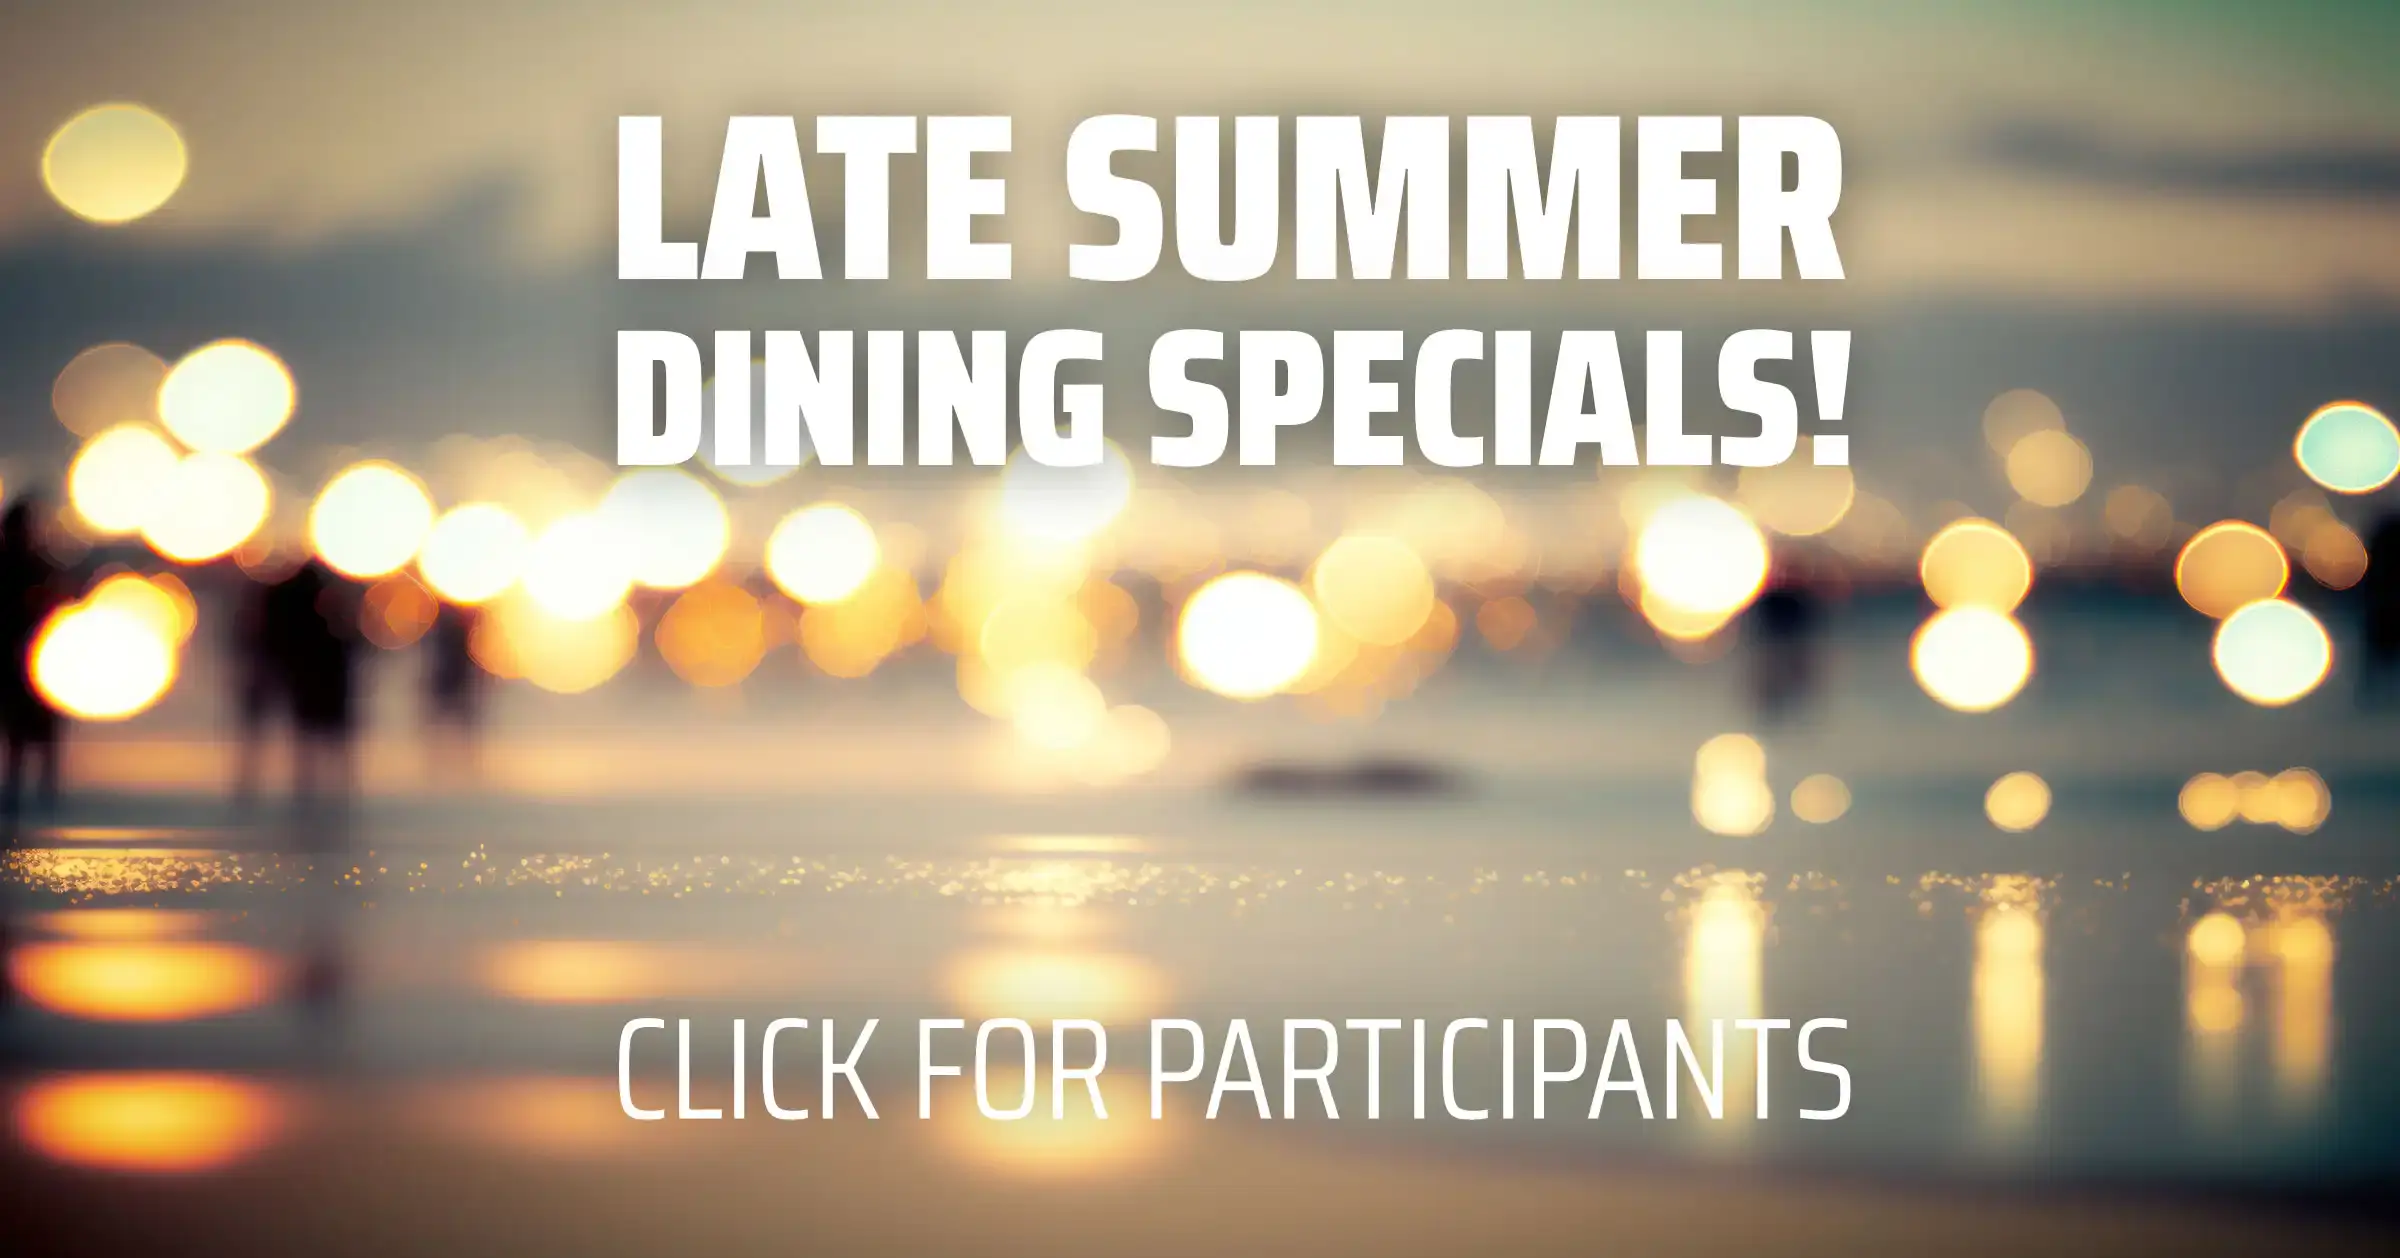 Late Summer Dining Specials - Desktop Version